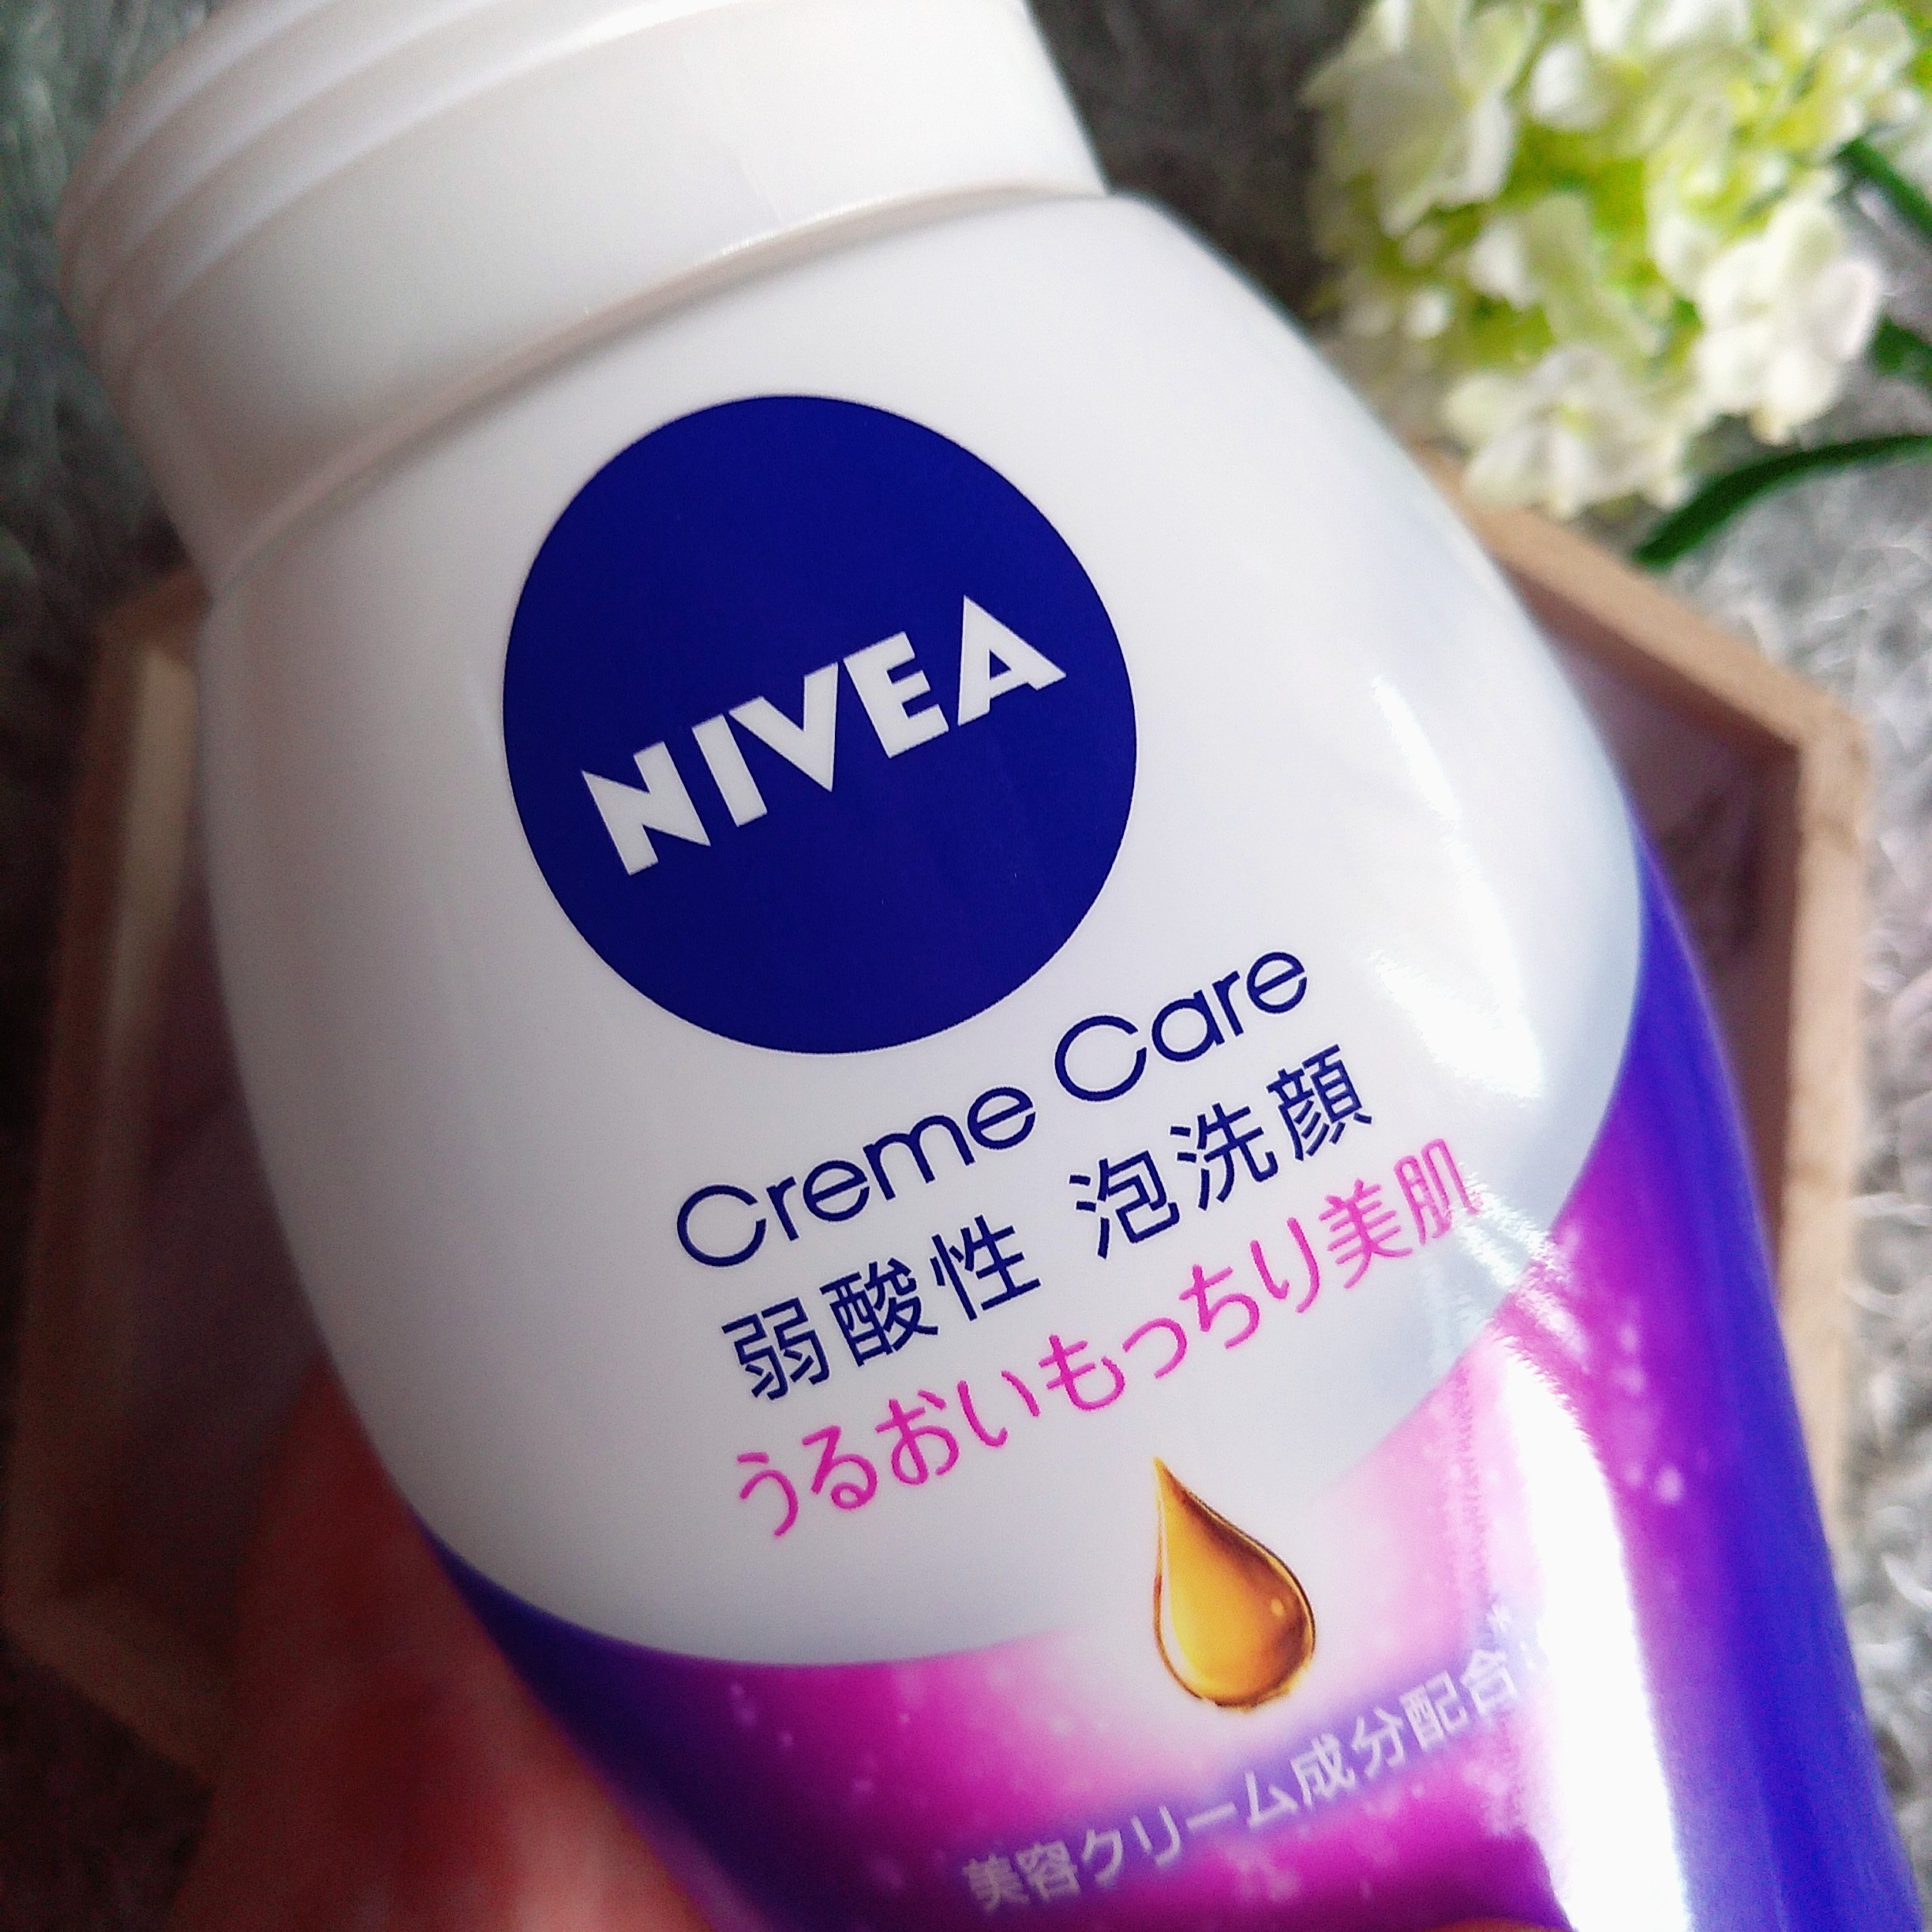 NIVEA/クリームケア弱酸性泡洗顔を使ったまるもふさんのクチコミ画像2